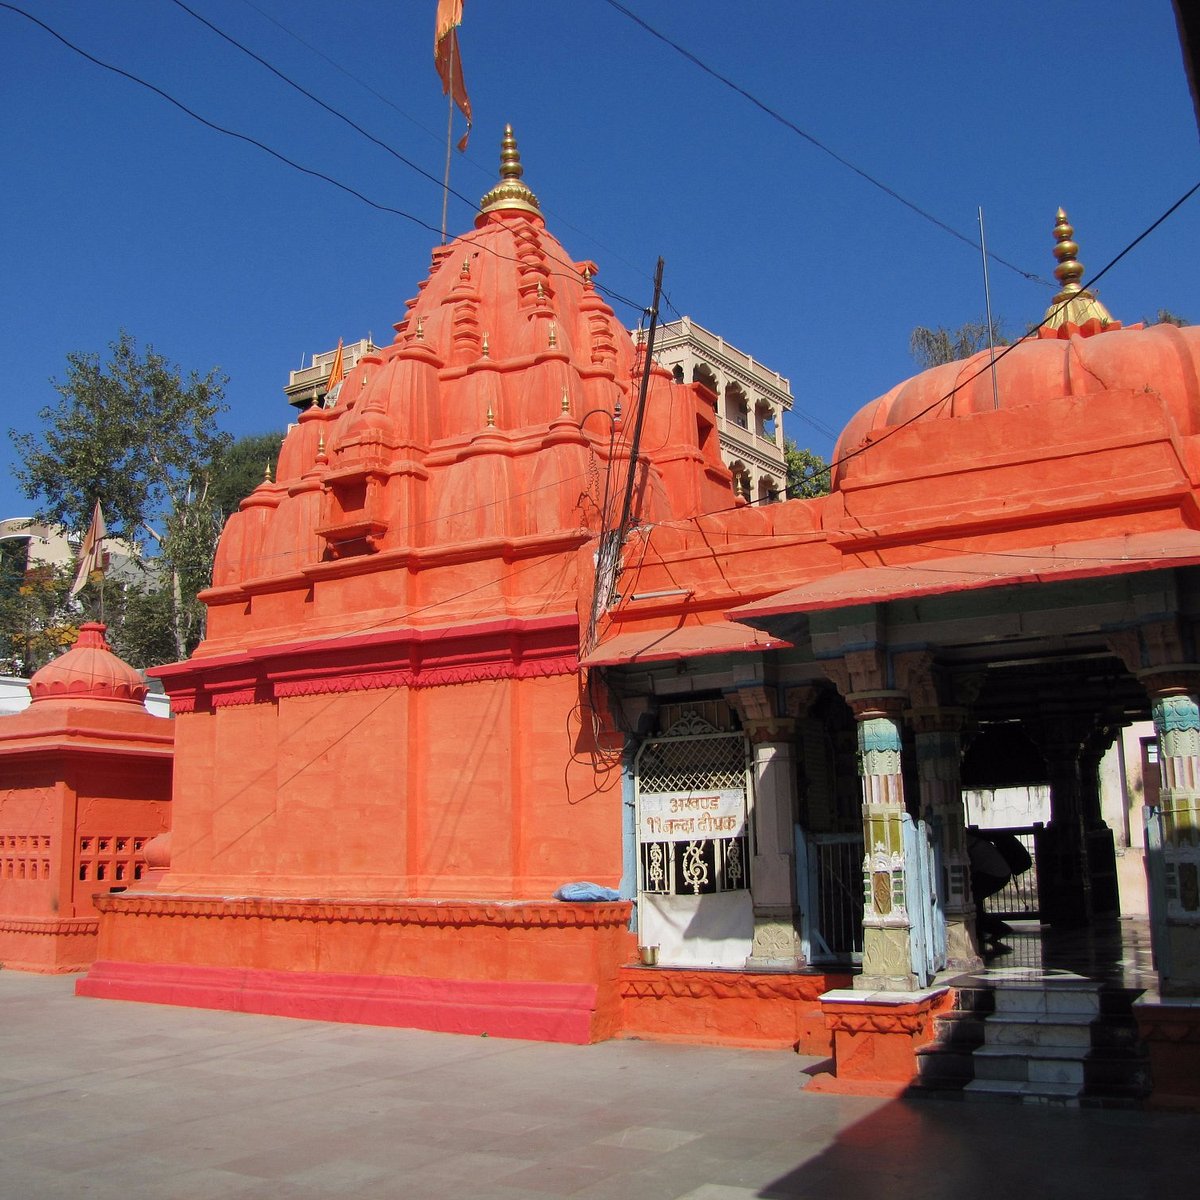 rajarajeshwara temple to shiva